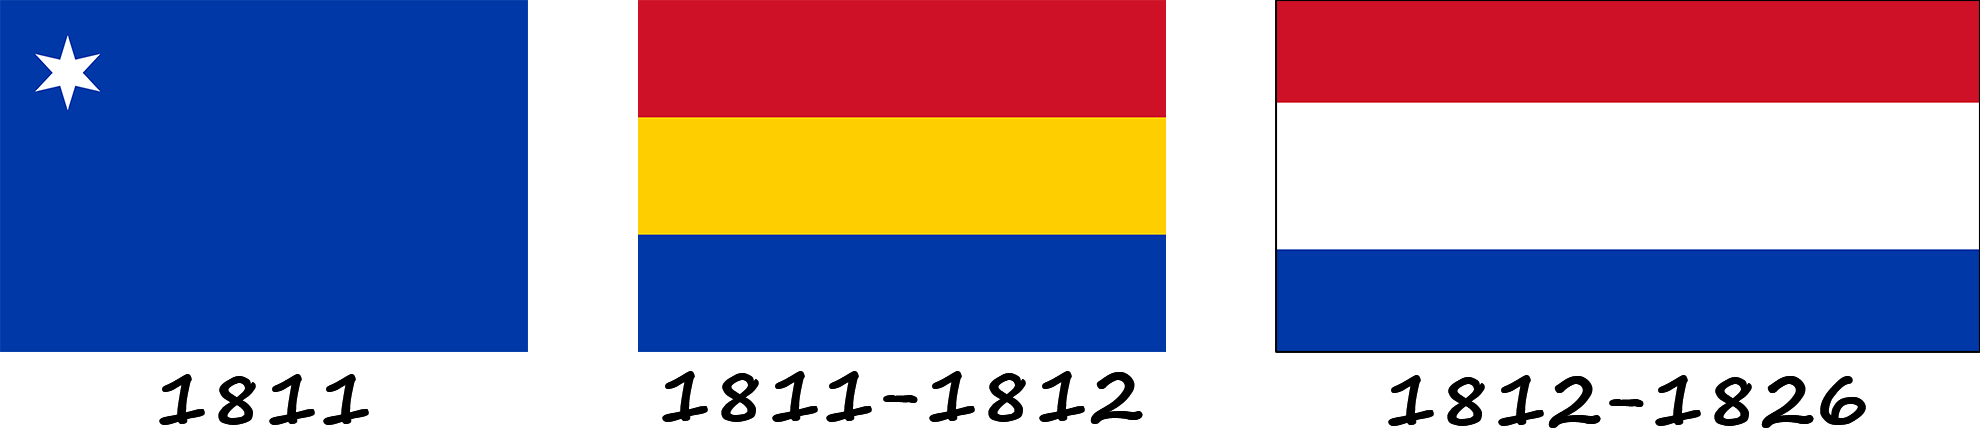 Histoire du drapeau du Paraguay